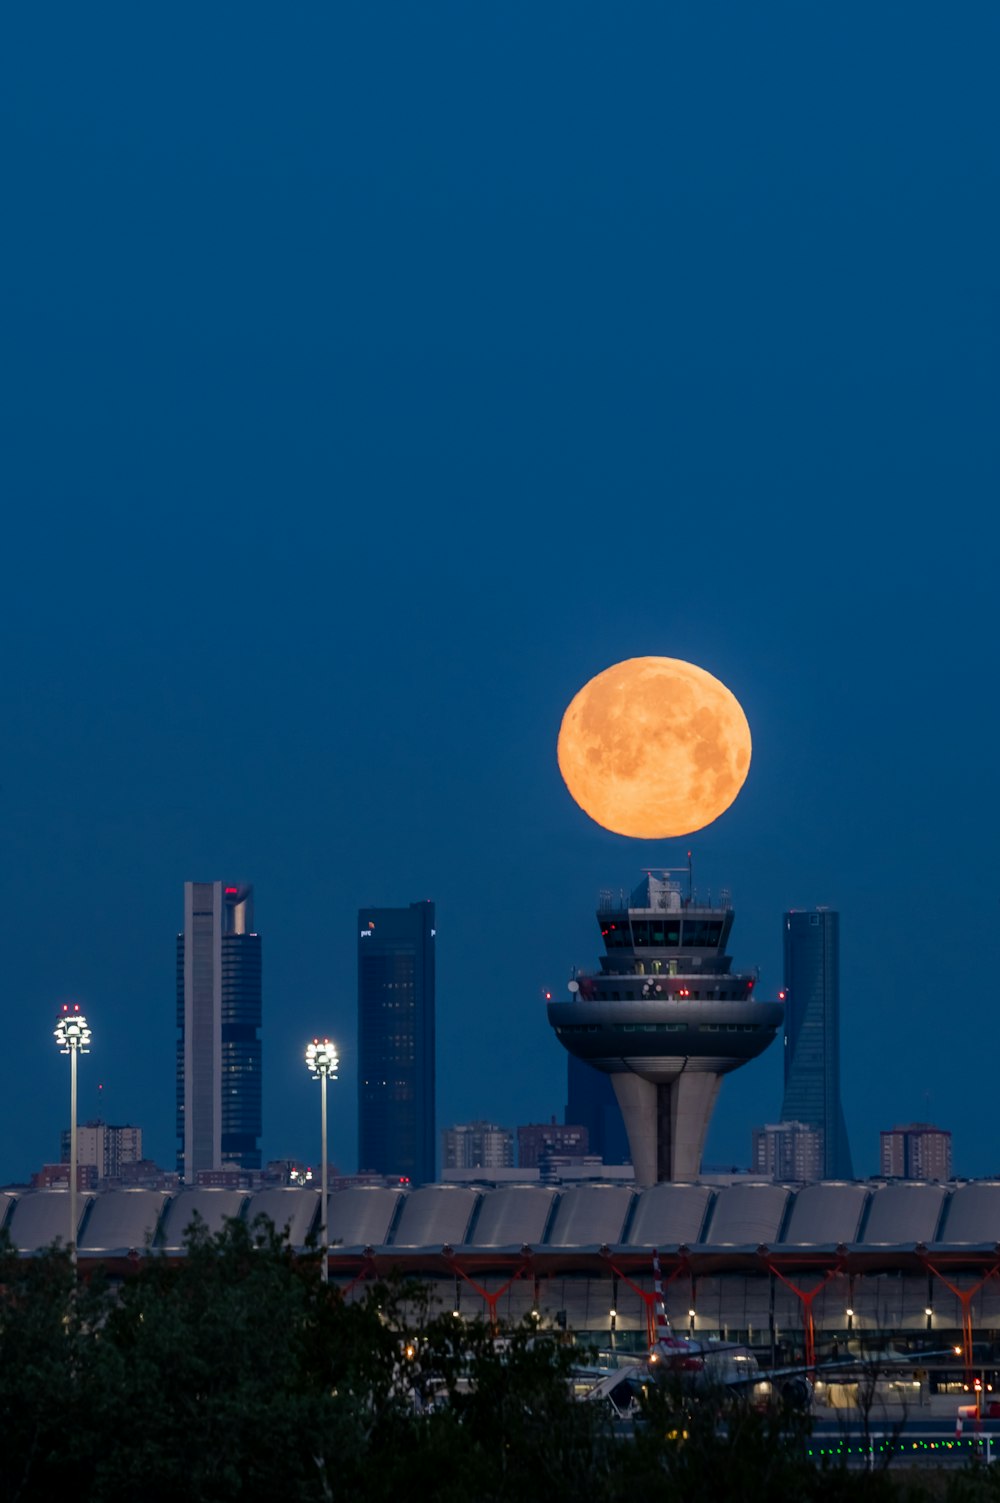 Une pleine lune se lève sur les toits d’une ville